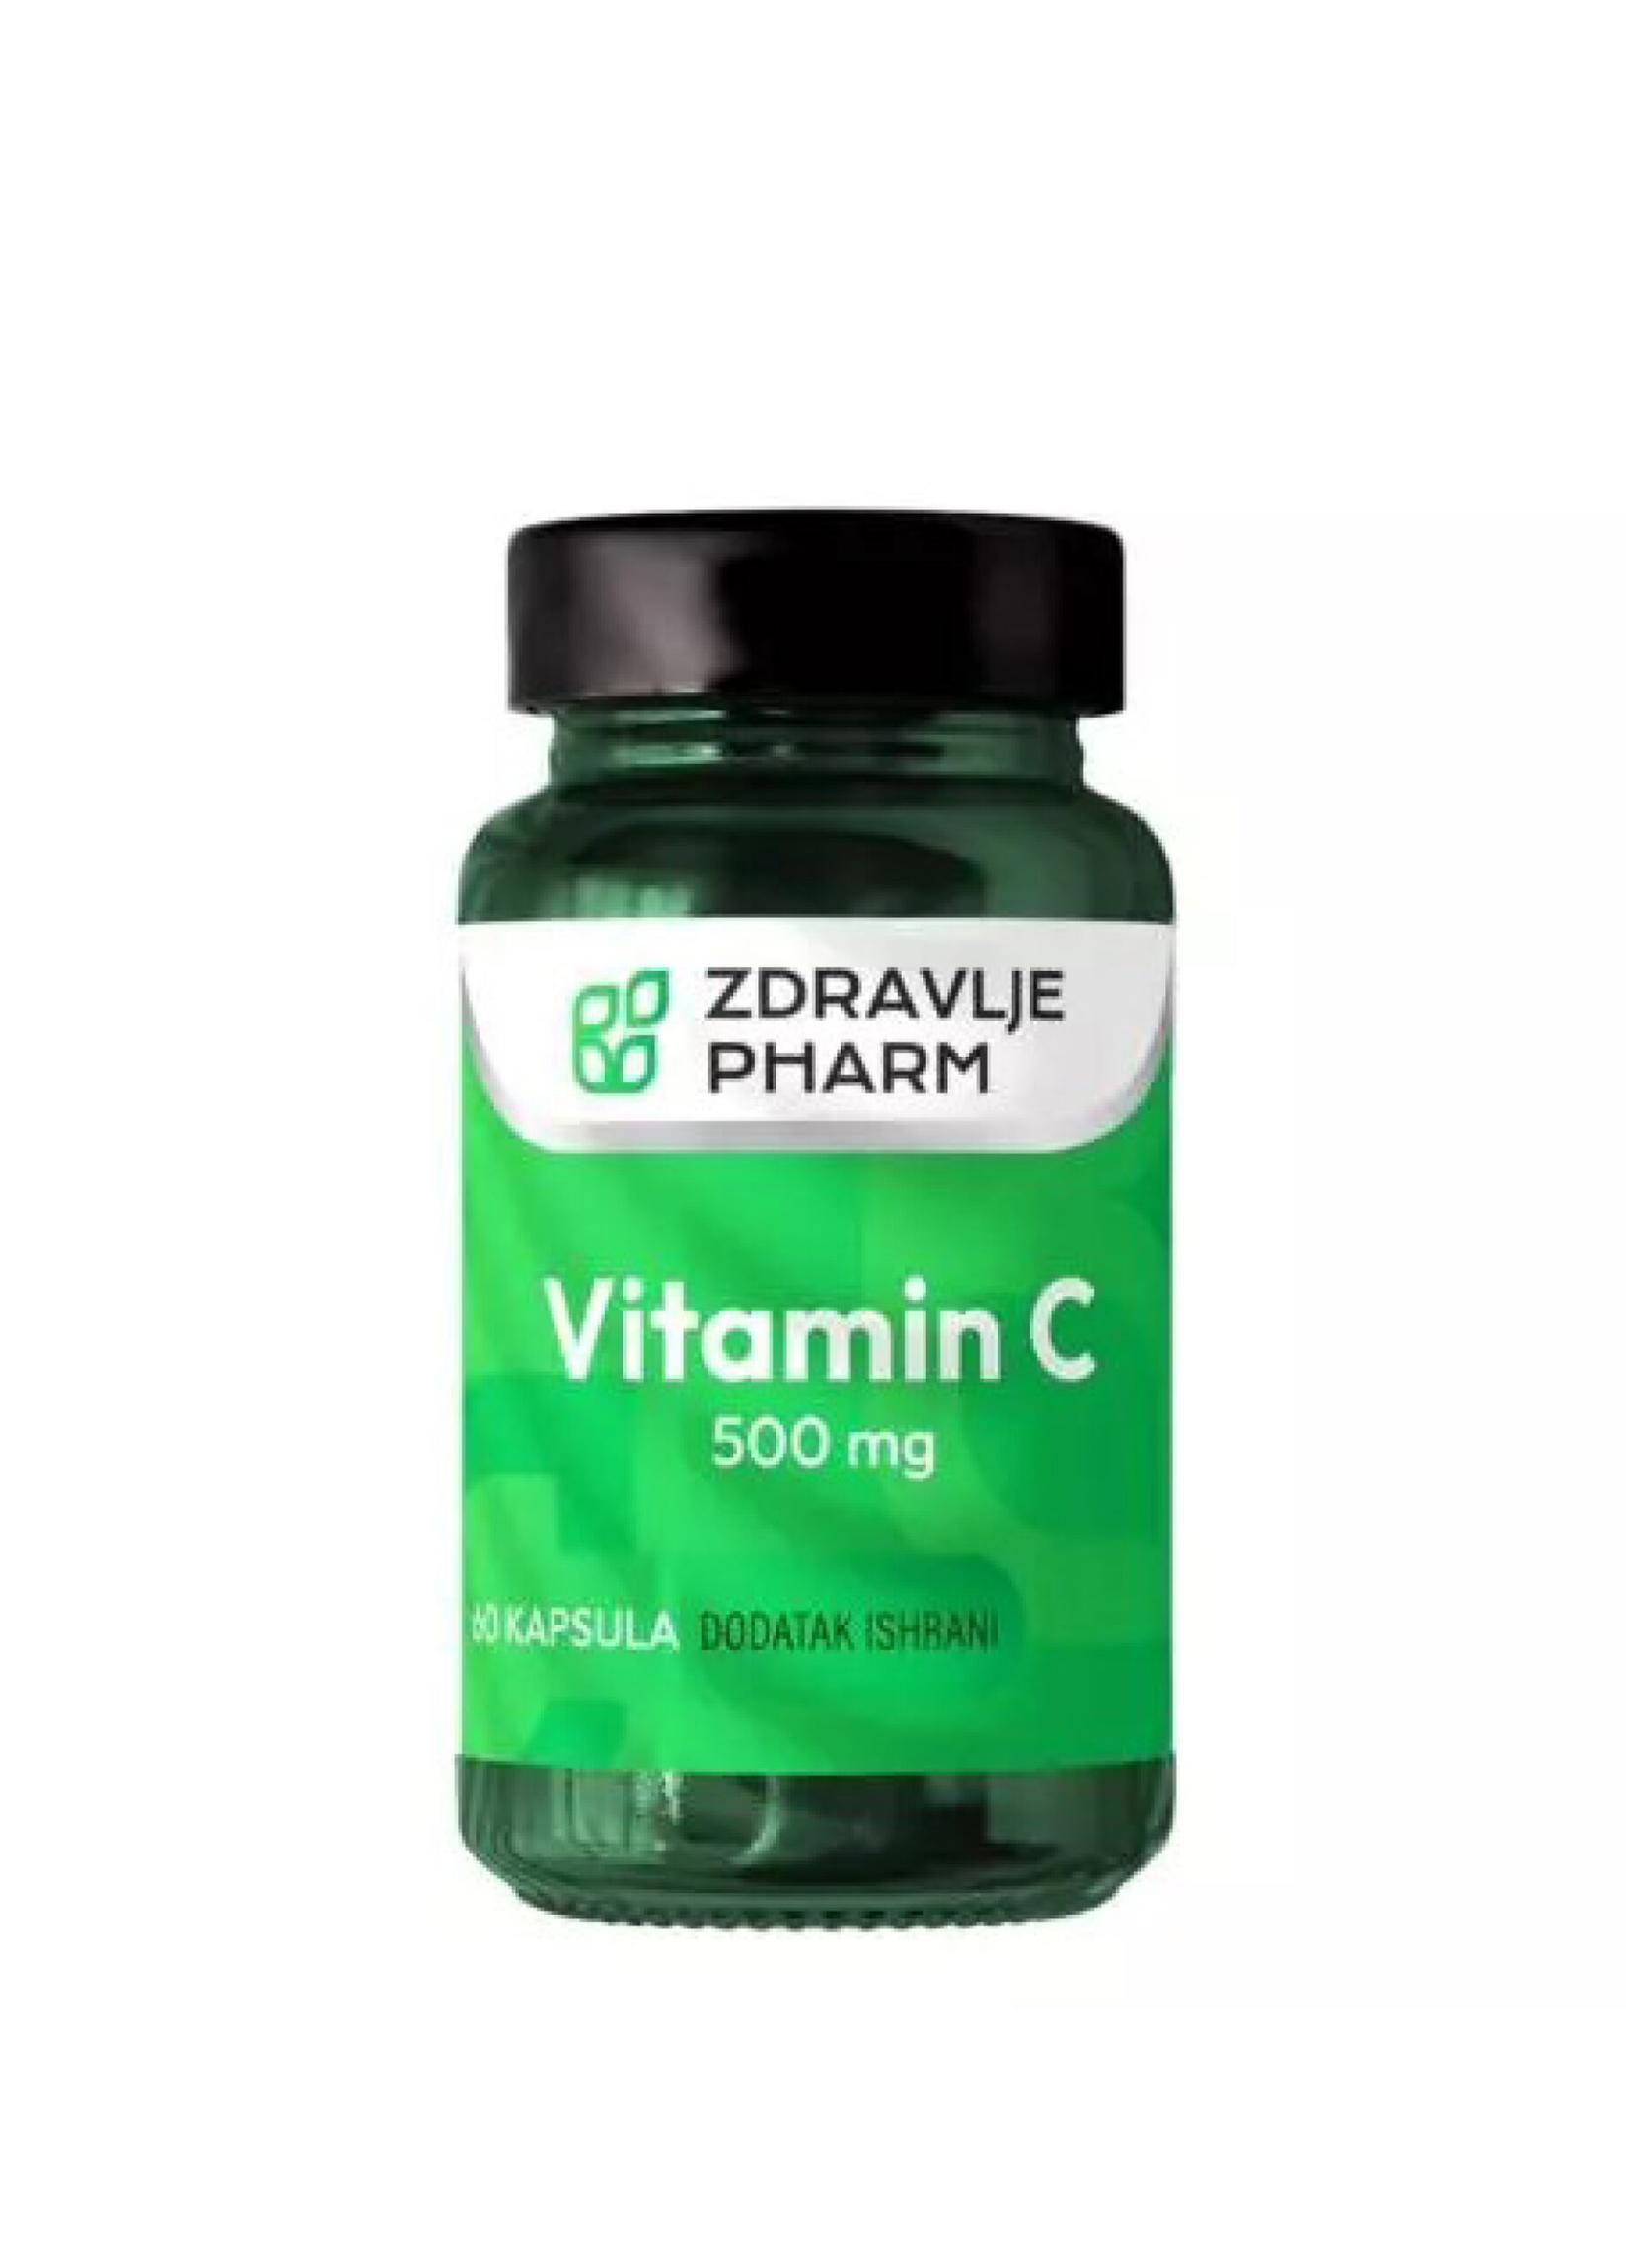 ZDRAVLJE PHARM Vitamin C, 500mg